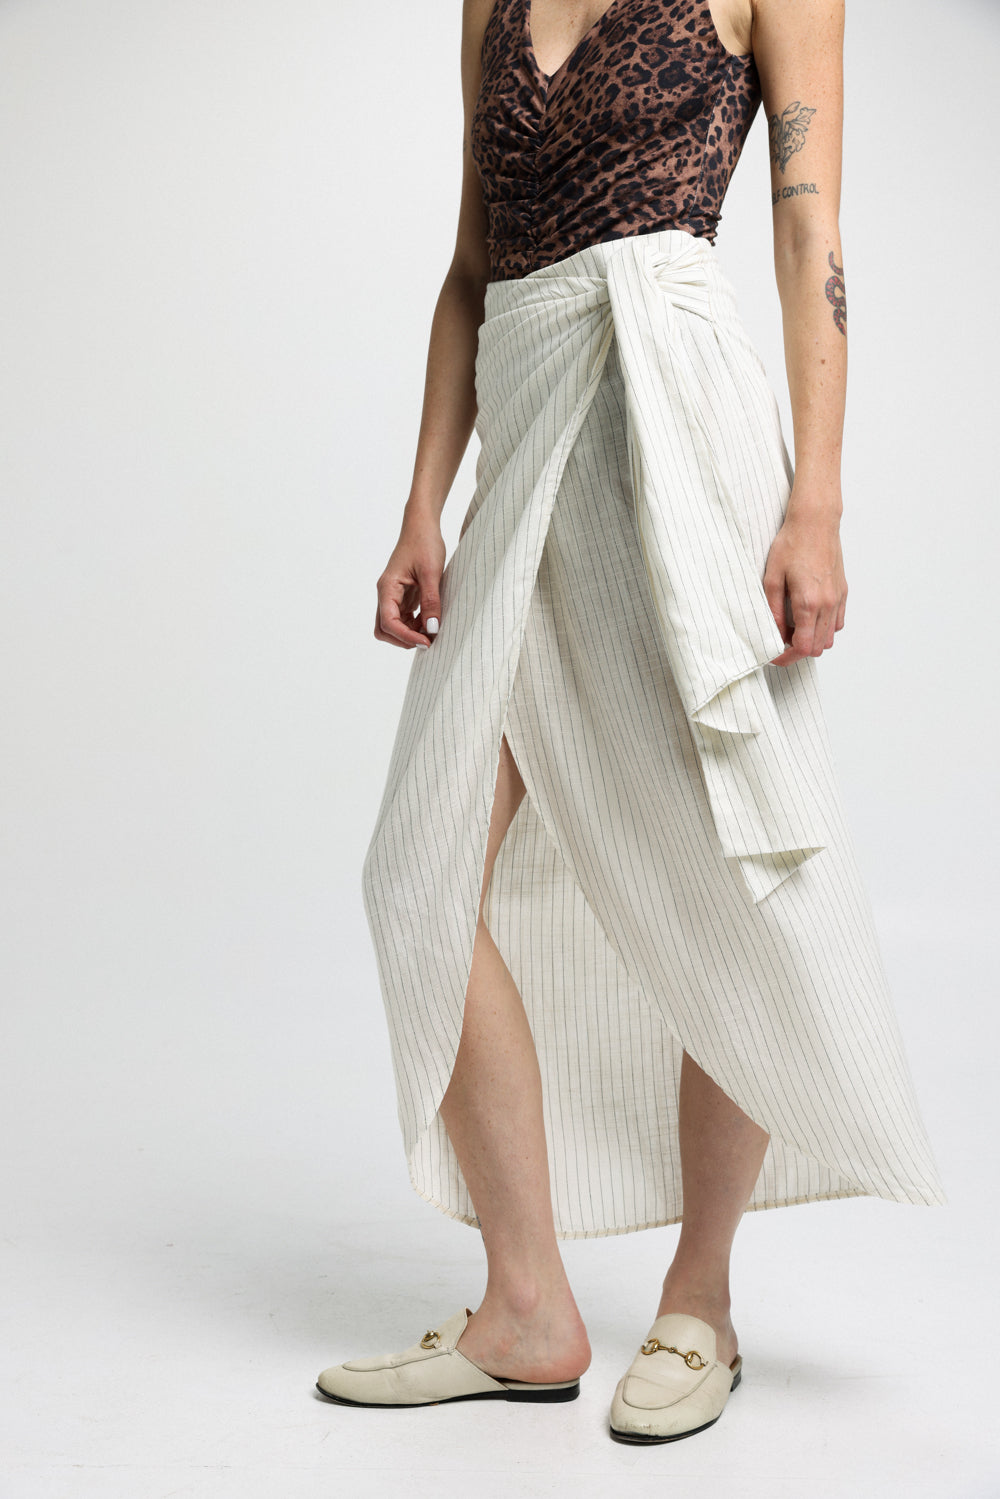 EE White & Black Stripes Skirt חצאית מעטפת מידי לנשים עם פסים